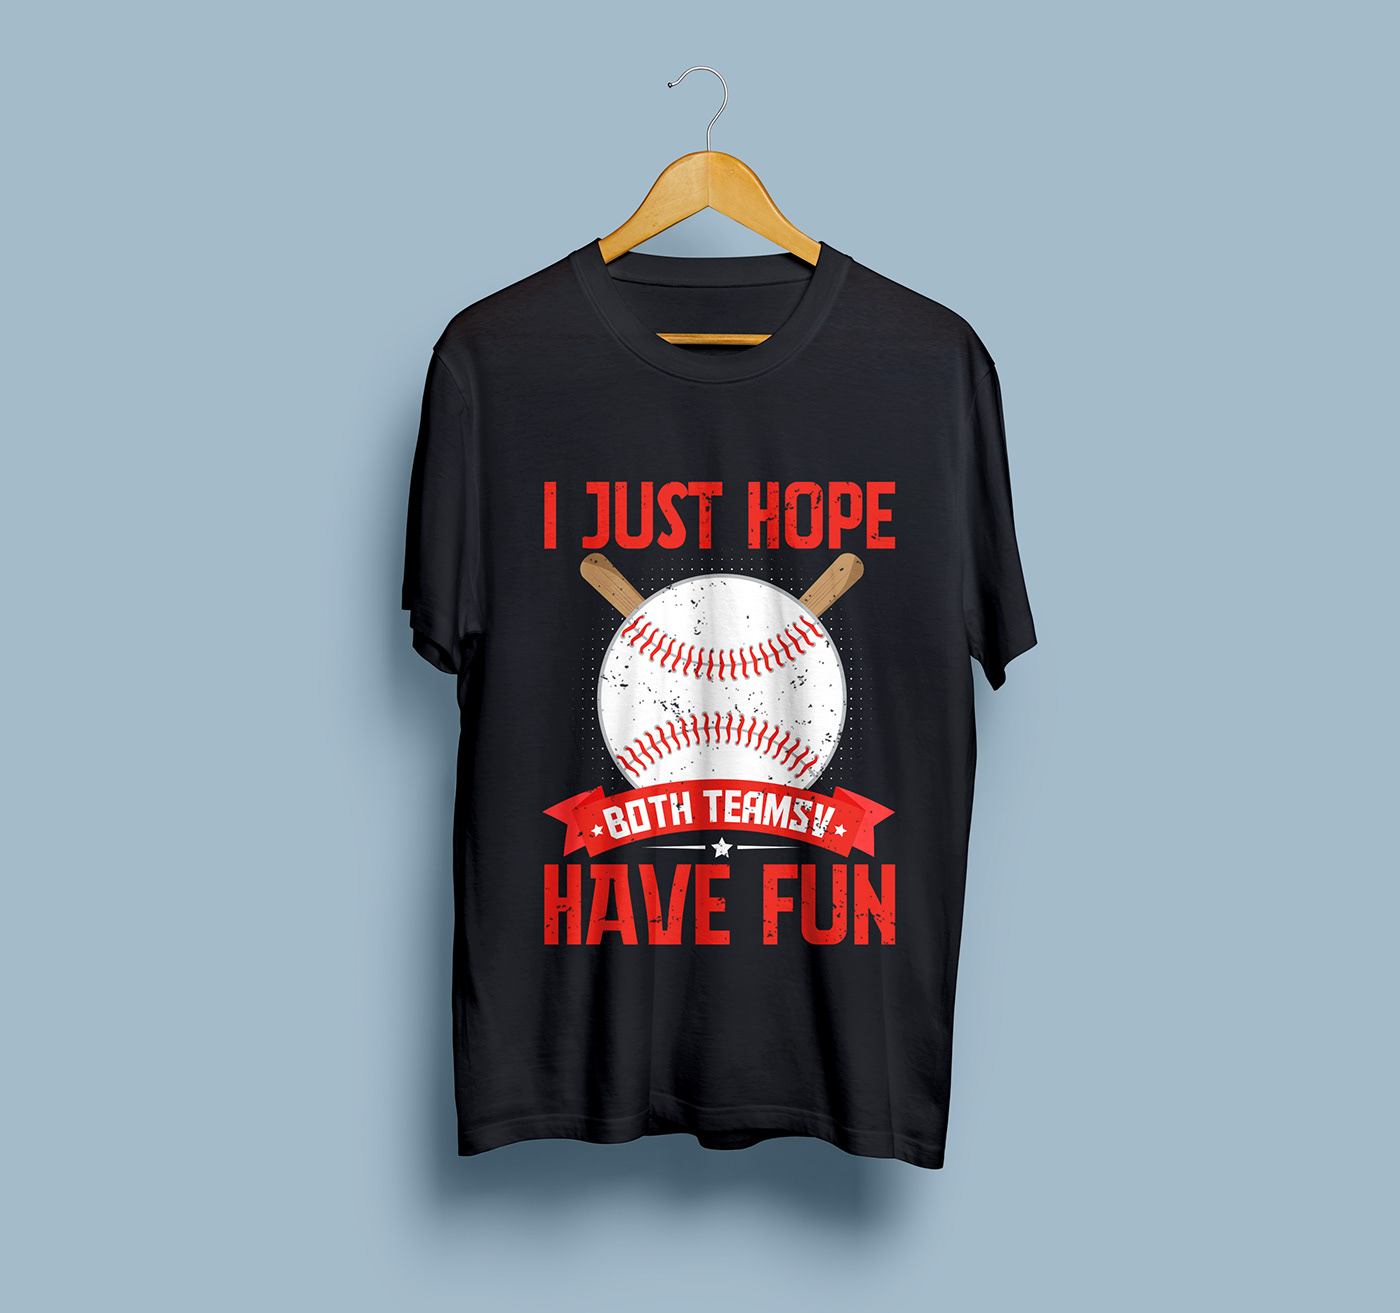 baseball t-shirt T-Shirt Design Best T-shirt Design sports t-shirt Baseball Lover T-Shirt Baseball T-Shirt design coustom t-shirt design gamer t-shirt Player t-shirt UNIQUE T-SHIRT DESIGN